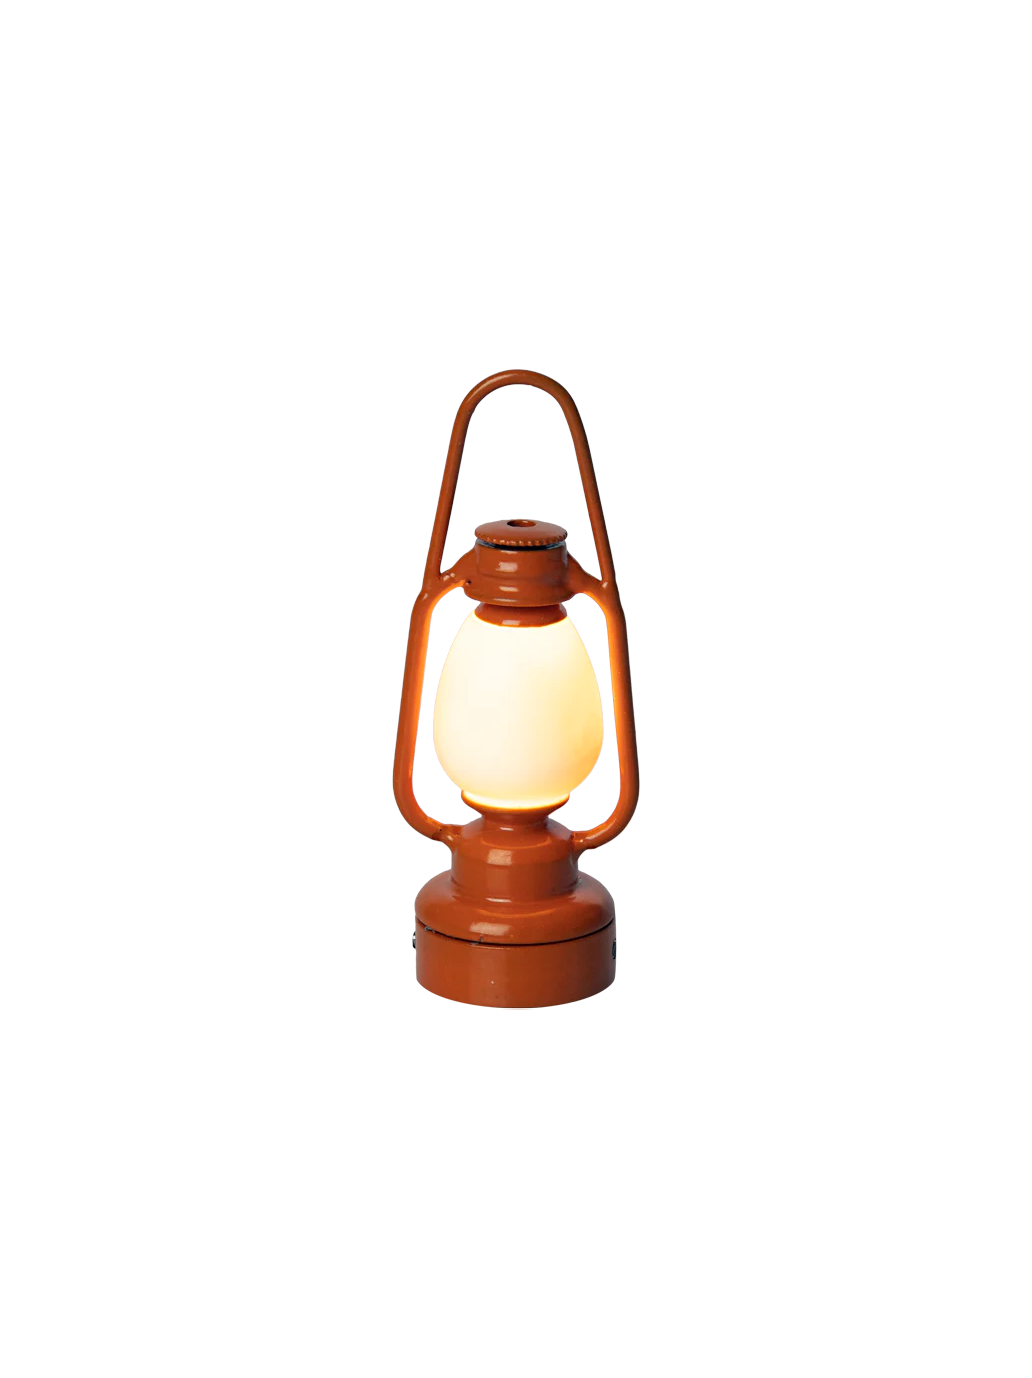 miniaturowa lampka w stylu retro